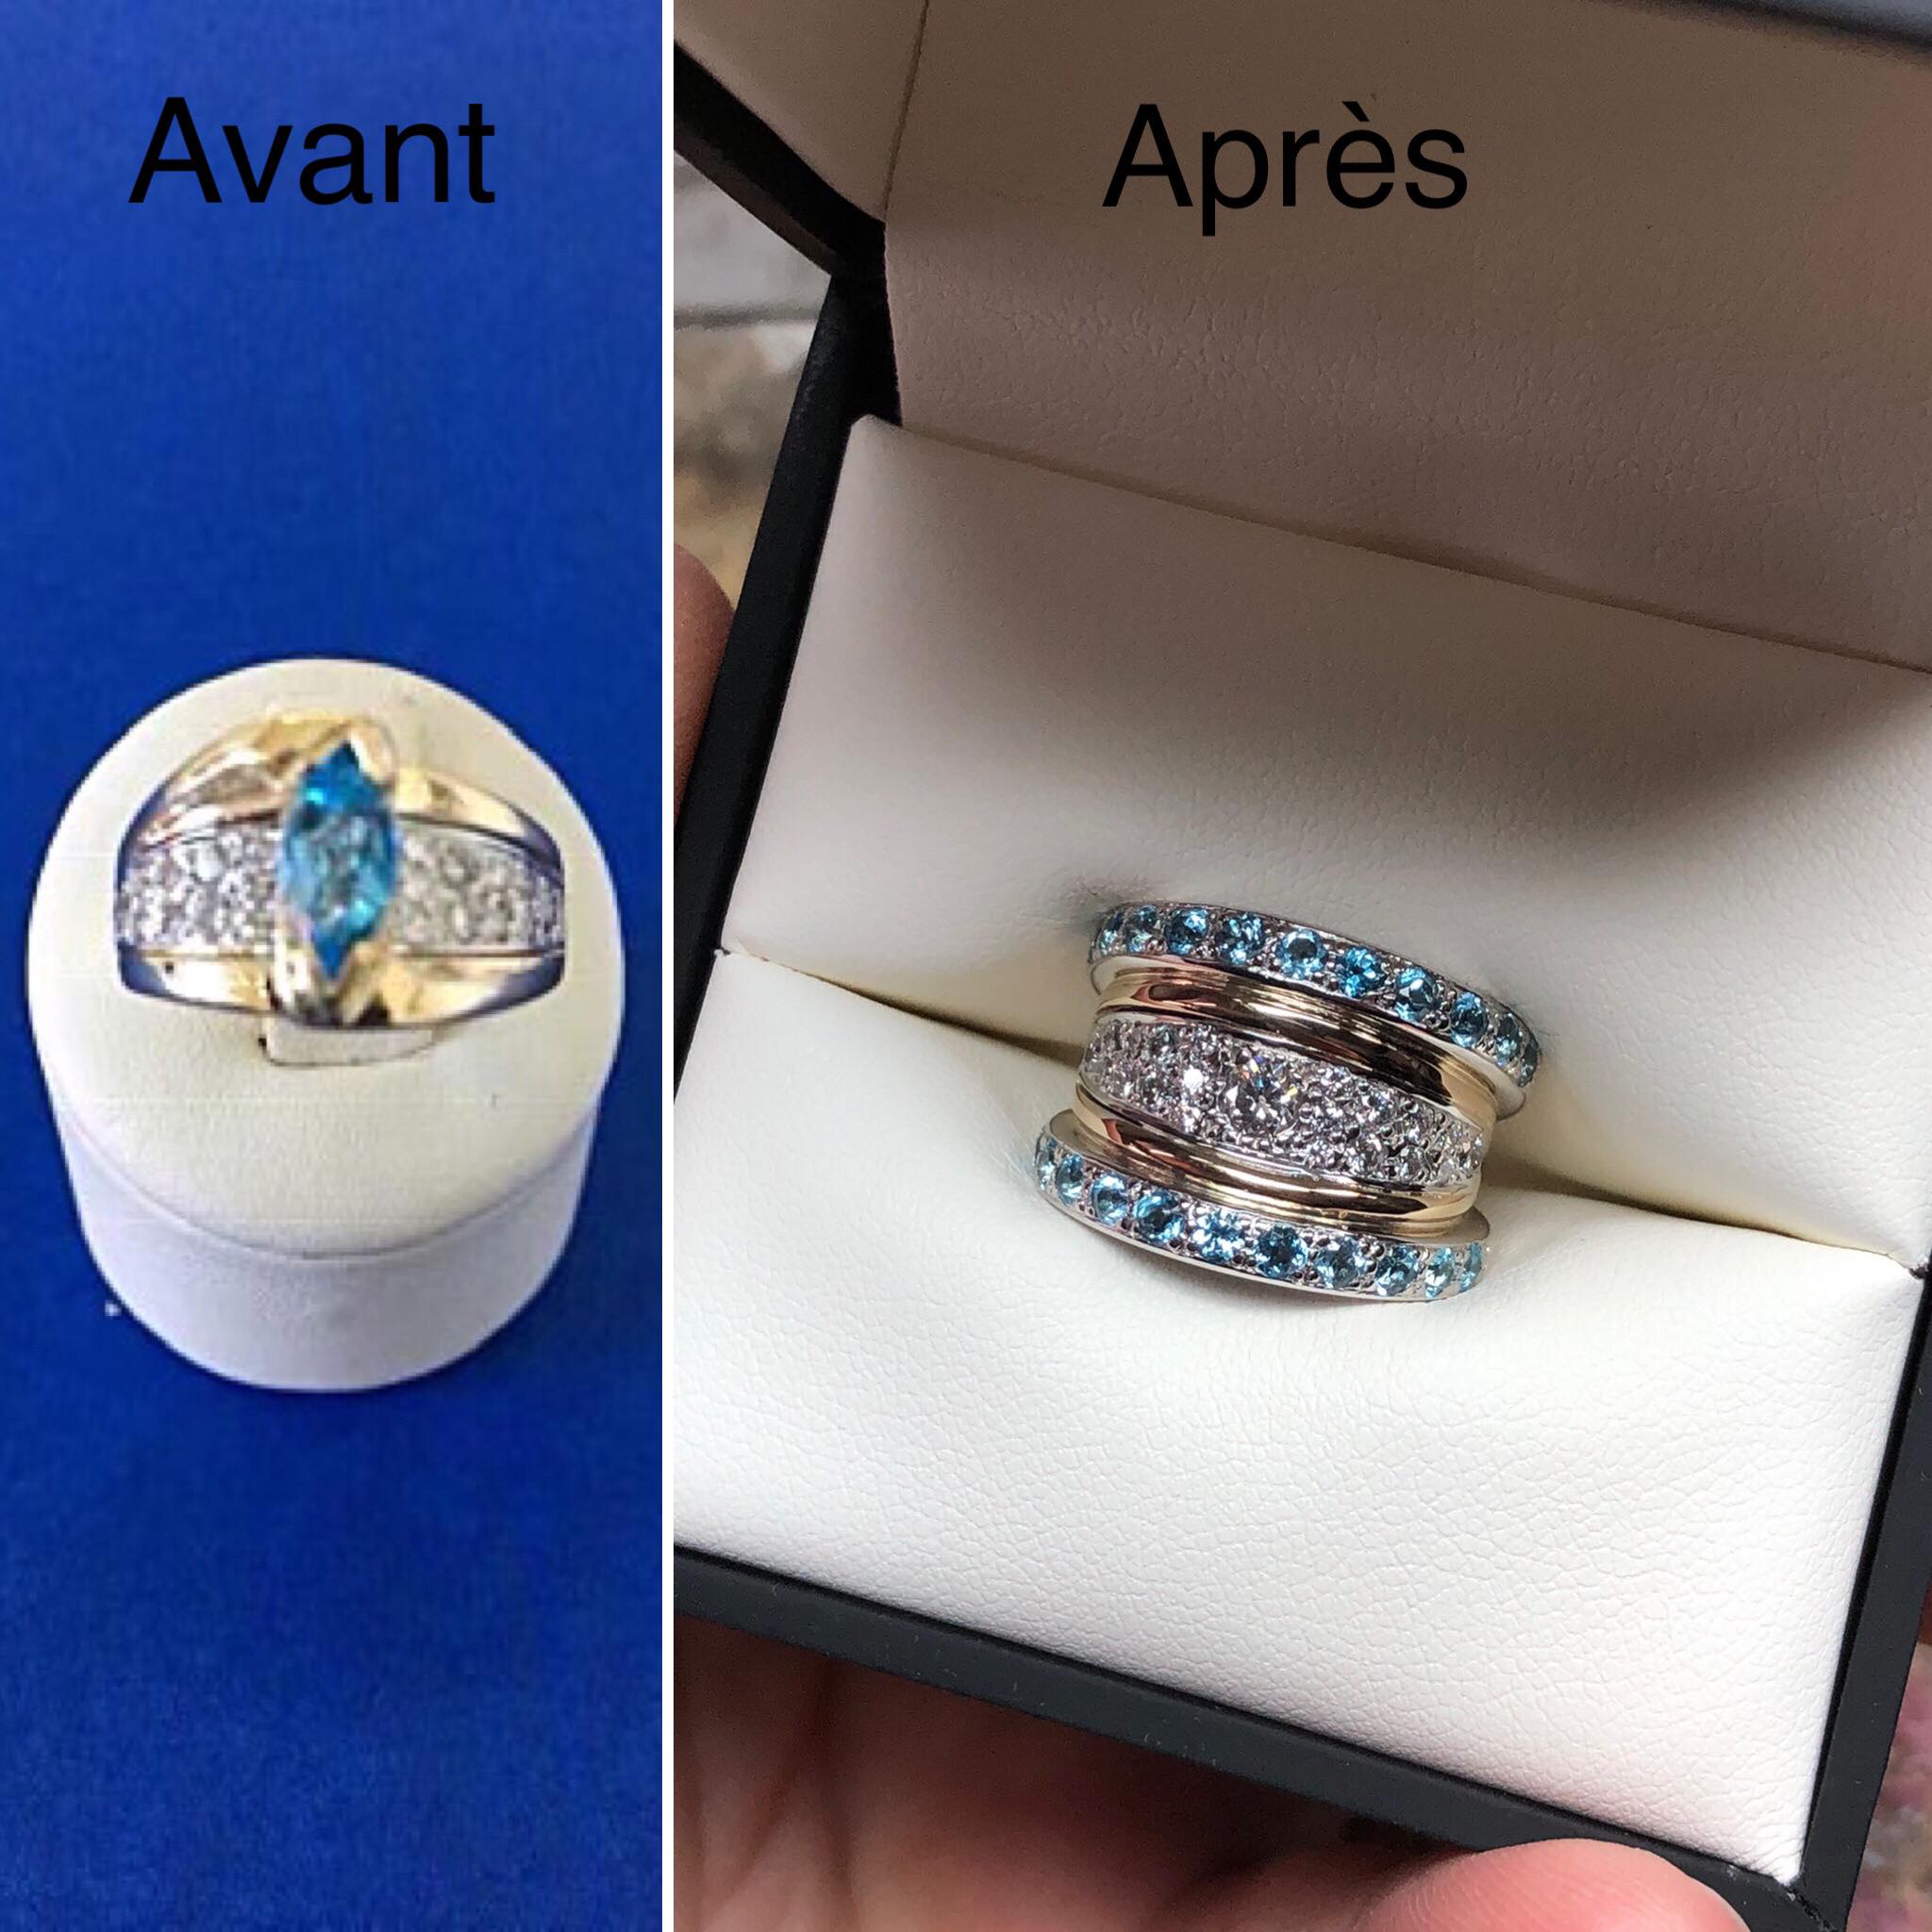 Caroline Savoie Joaillerie Bague Sur Mesure Avant Apres Bijoux Montreal Quebec Diamants Topazes Bleues Custom Made Ring Transformation Souvenirs